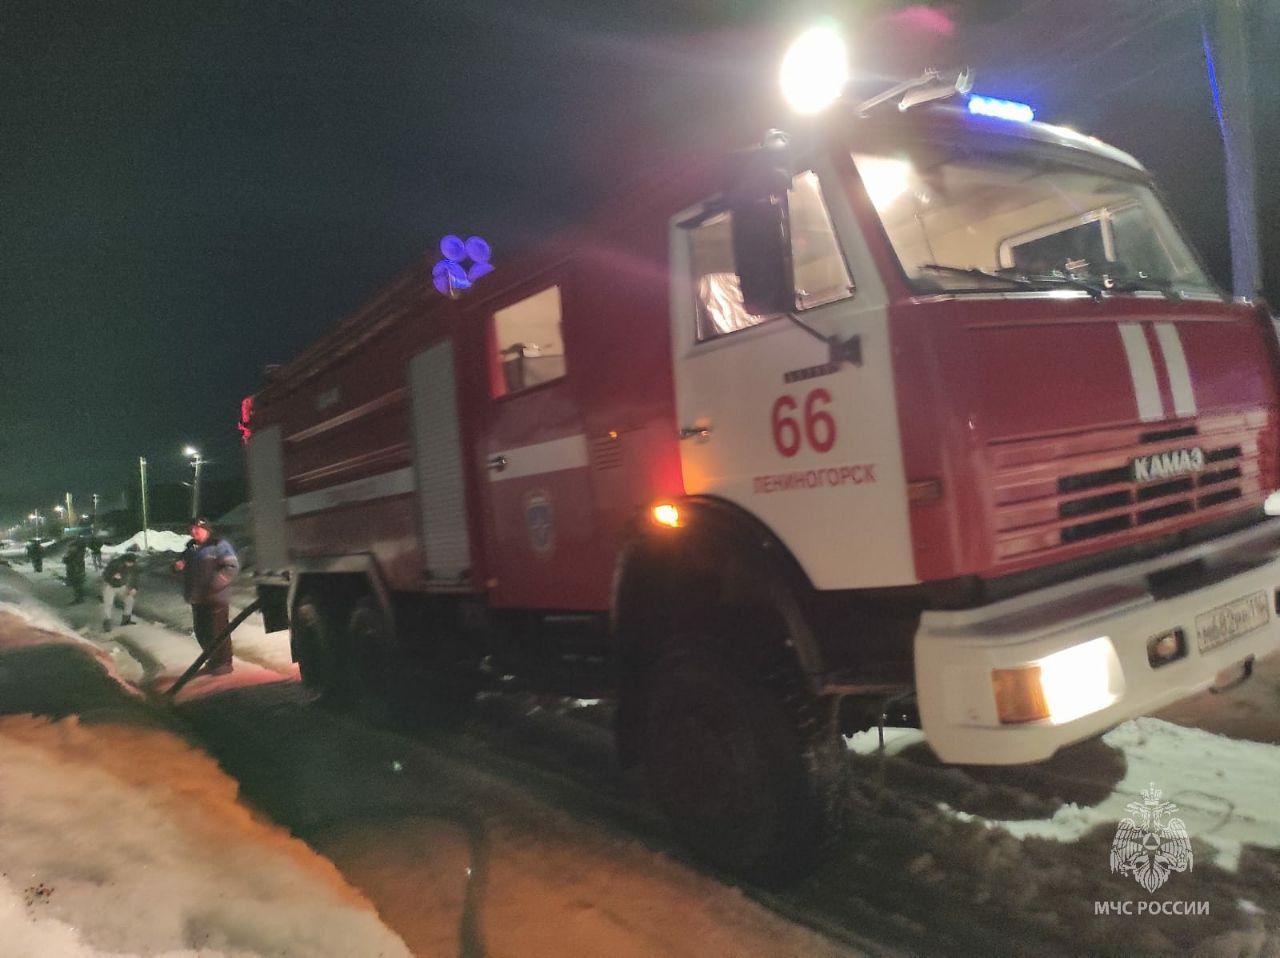 Предварительной причиной пожара в Лениногорском районе назвали неосторожность при курении